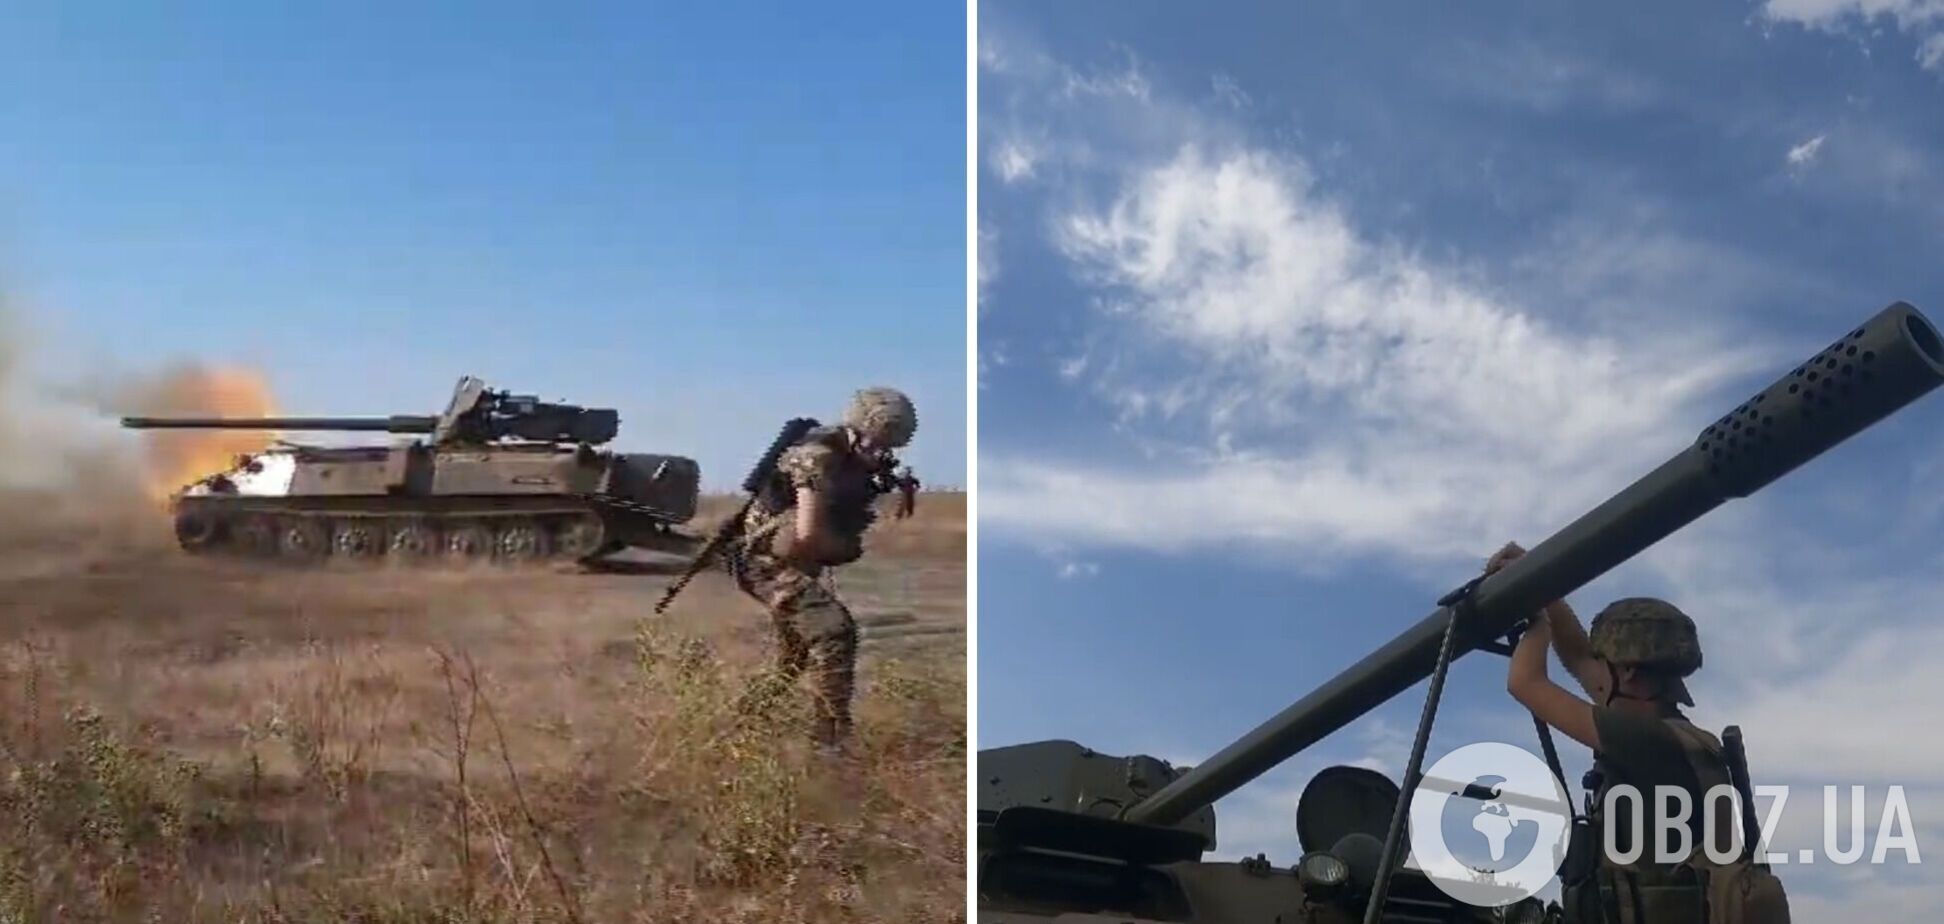 Украинские воины собрали мощную боевую машину с трофейной техники: видео с разработкой